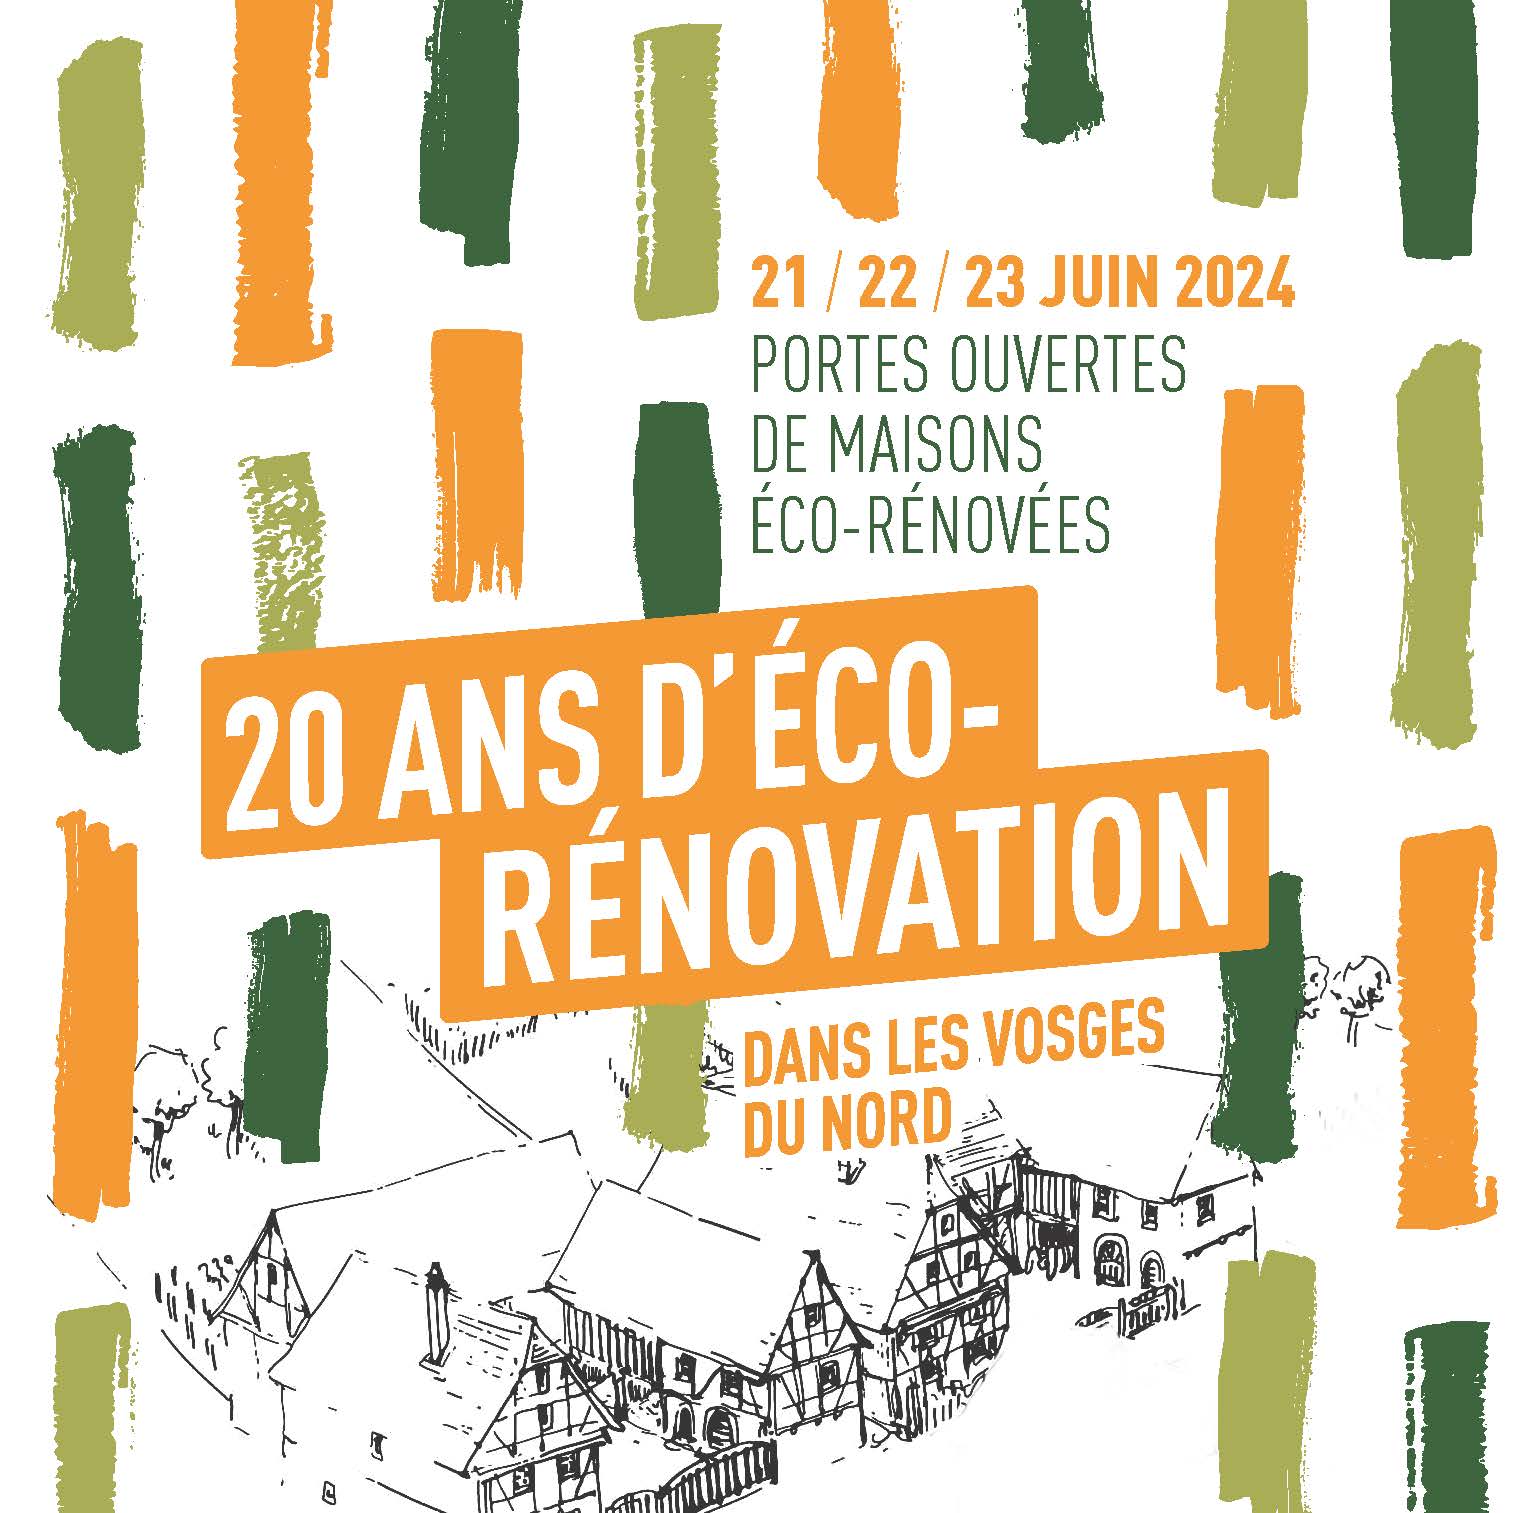 Conférences-Débat / 20 ans déco-rénovation dans les Vosges du Nord : L'ÉCO-RENOVATION DU BÂTI ANCIEN DANS LES VOSGES DU NORD